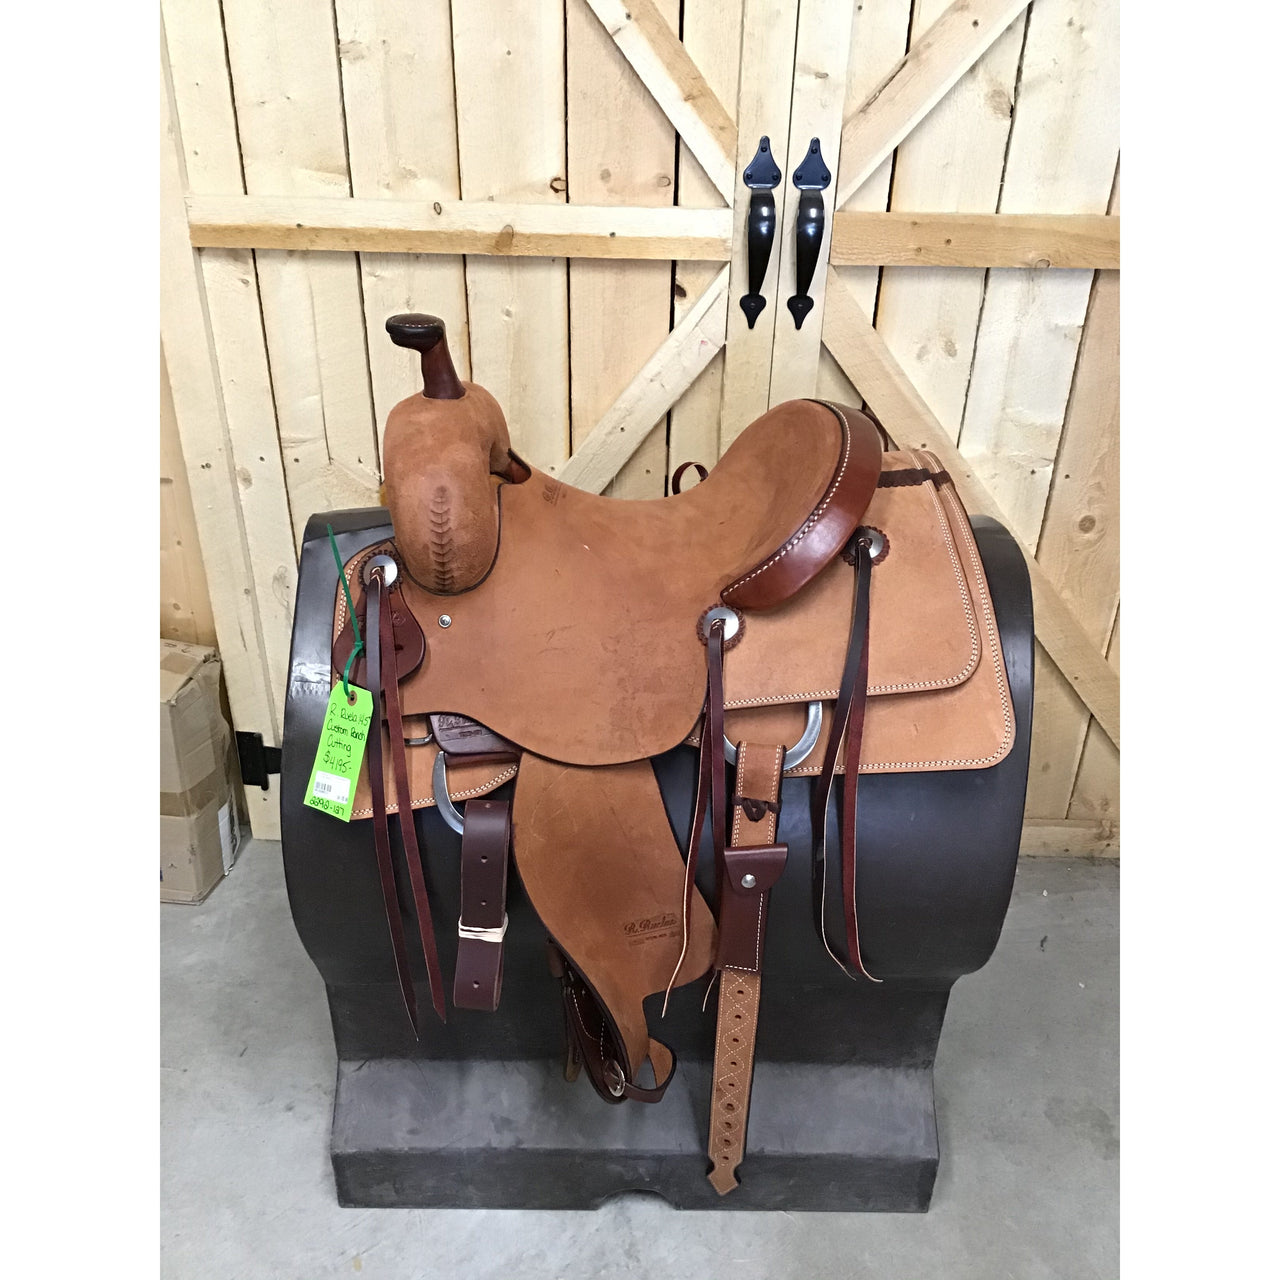 R. Ruelas 14.5" Custom Ranch Cutting Saddle